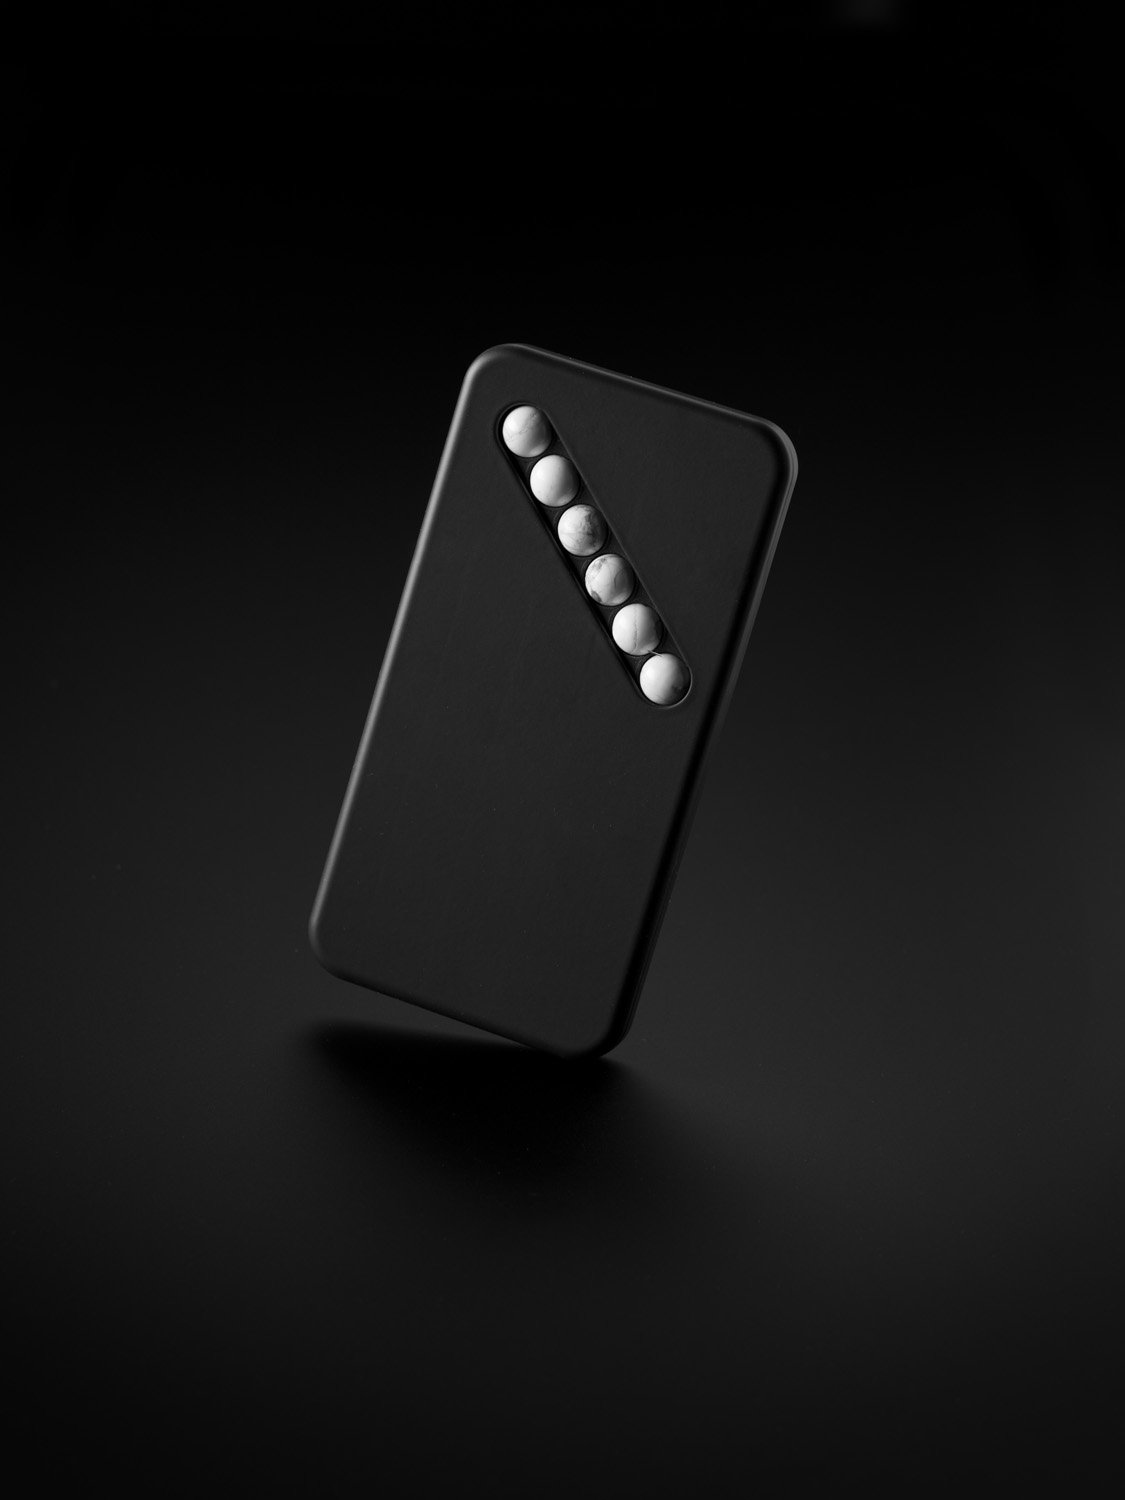 Das Ersatz-Smartphone vom Designer Klemens Schillinger ausgeleuchtet vor dunklem Hintergrund.